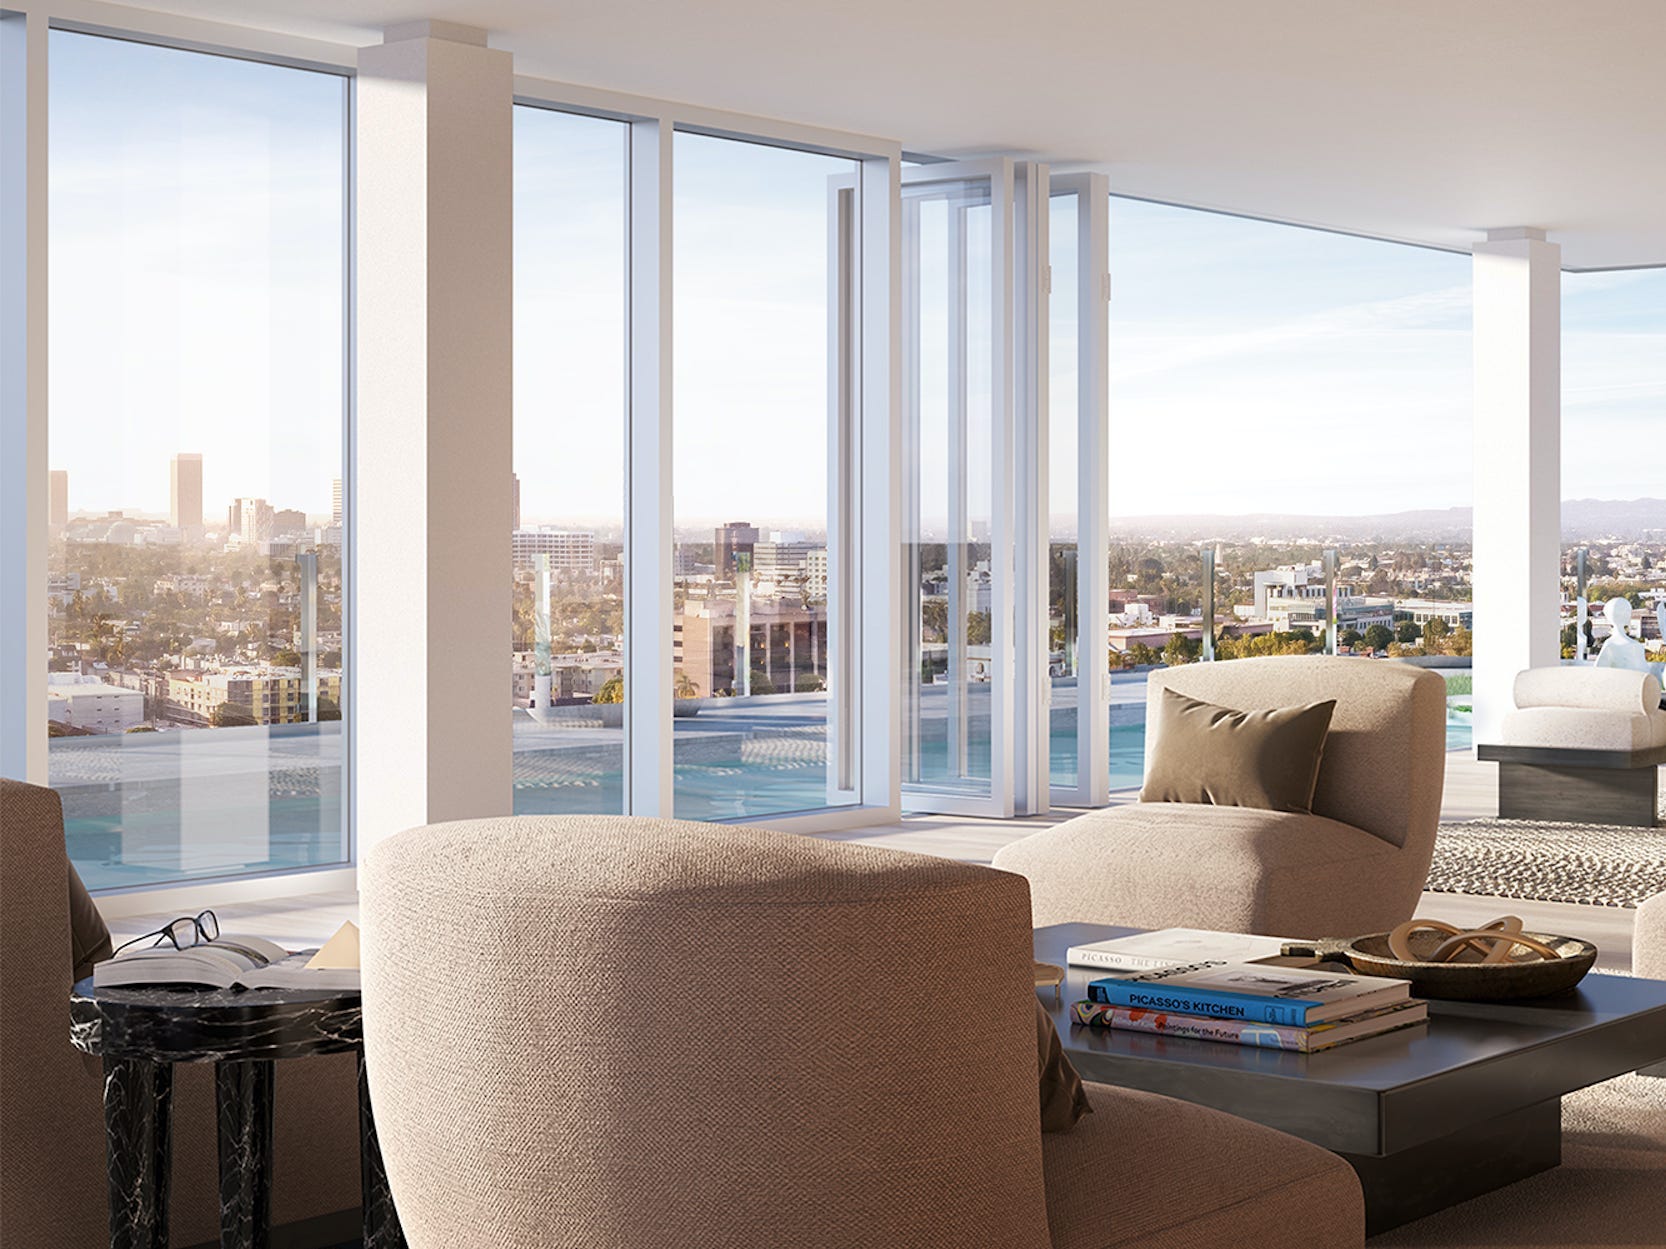 Gemeinschaftssitzgelegenheiten wie Sofas in einem Wohnzimmer mit eingezogenen Glastüren, die einen Blick auf Los Angeles freigeben.